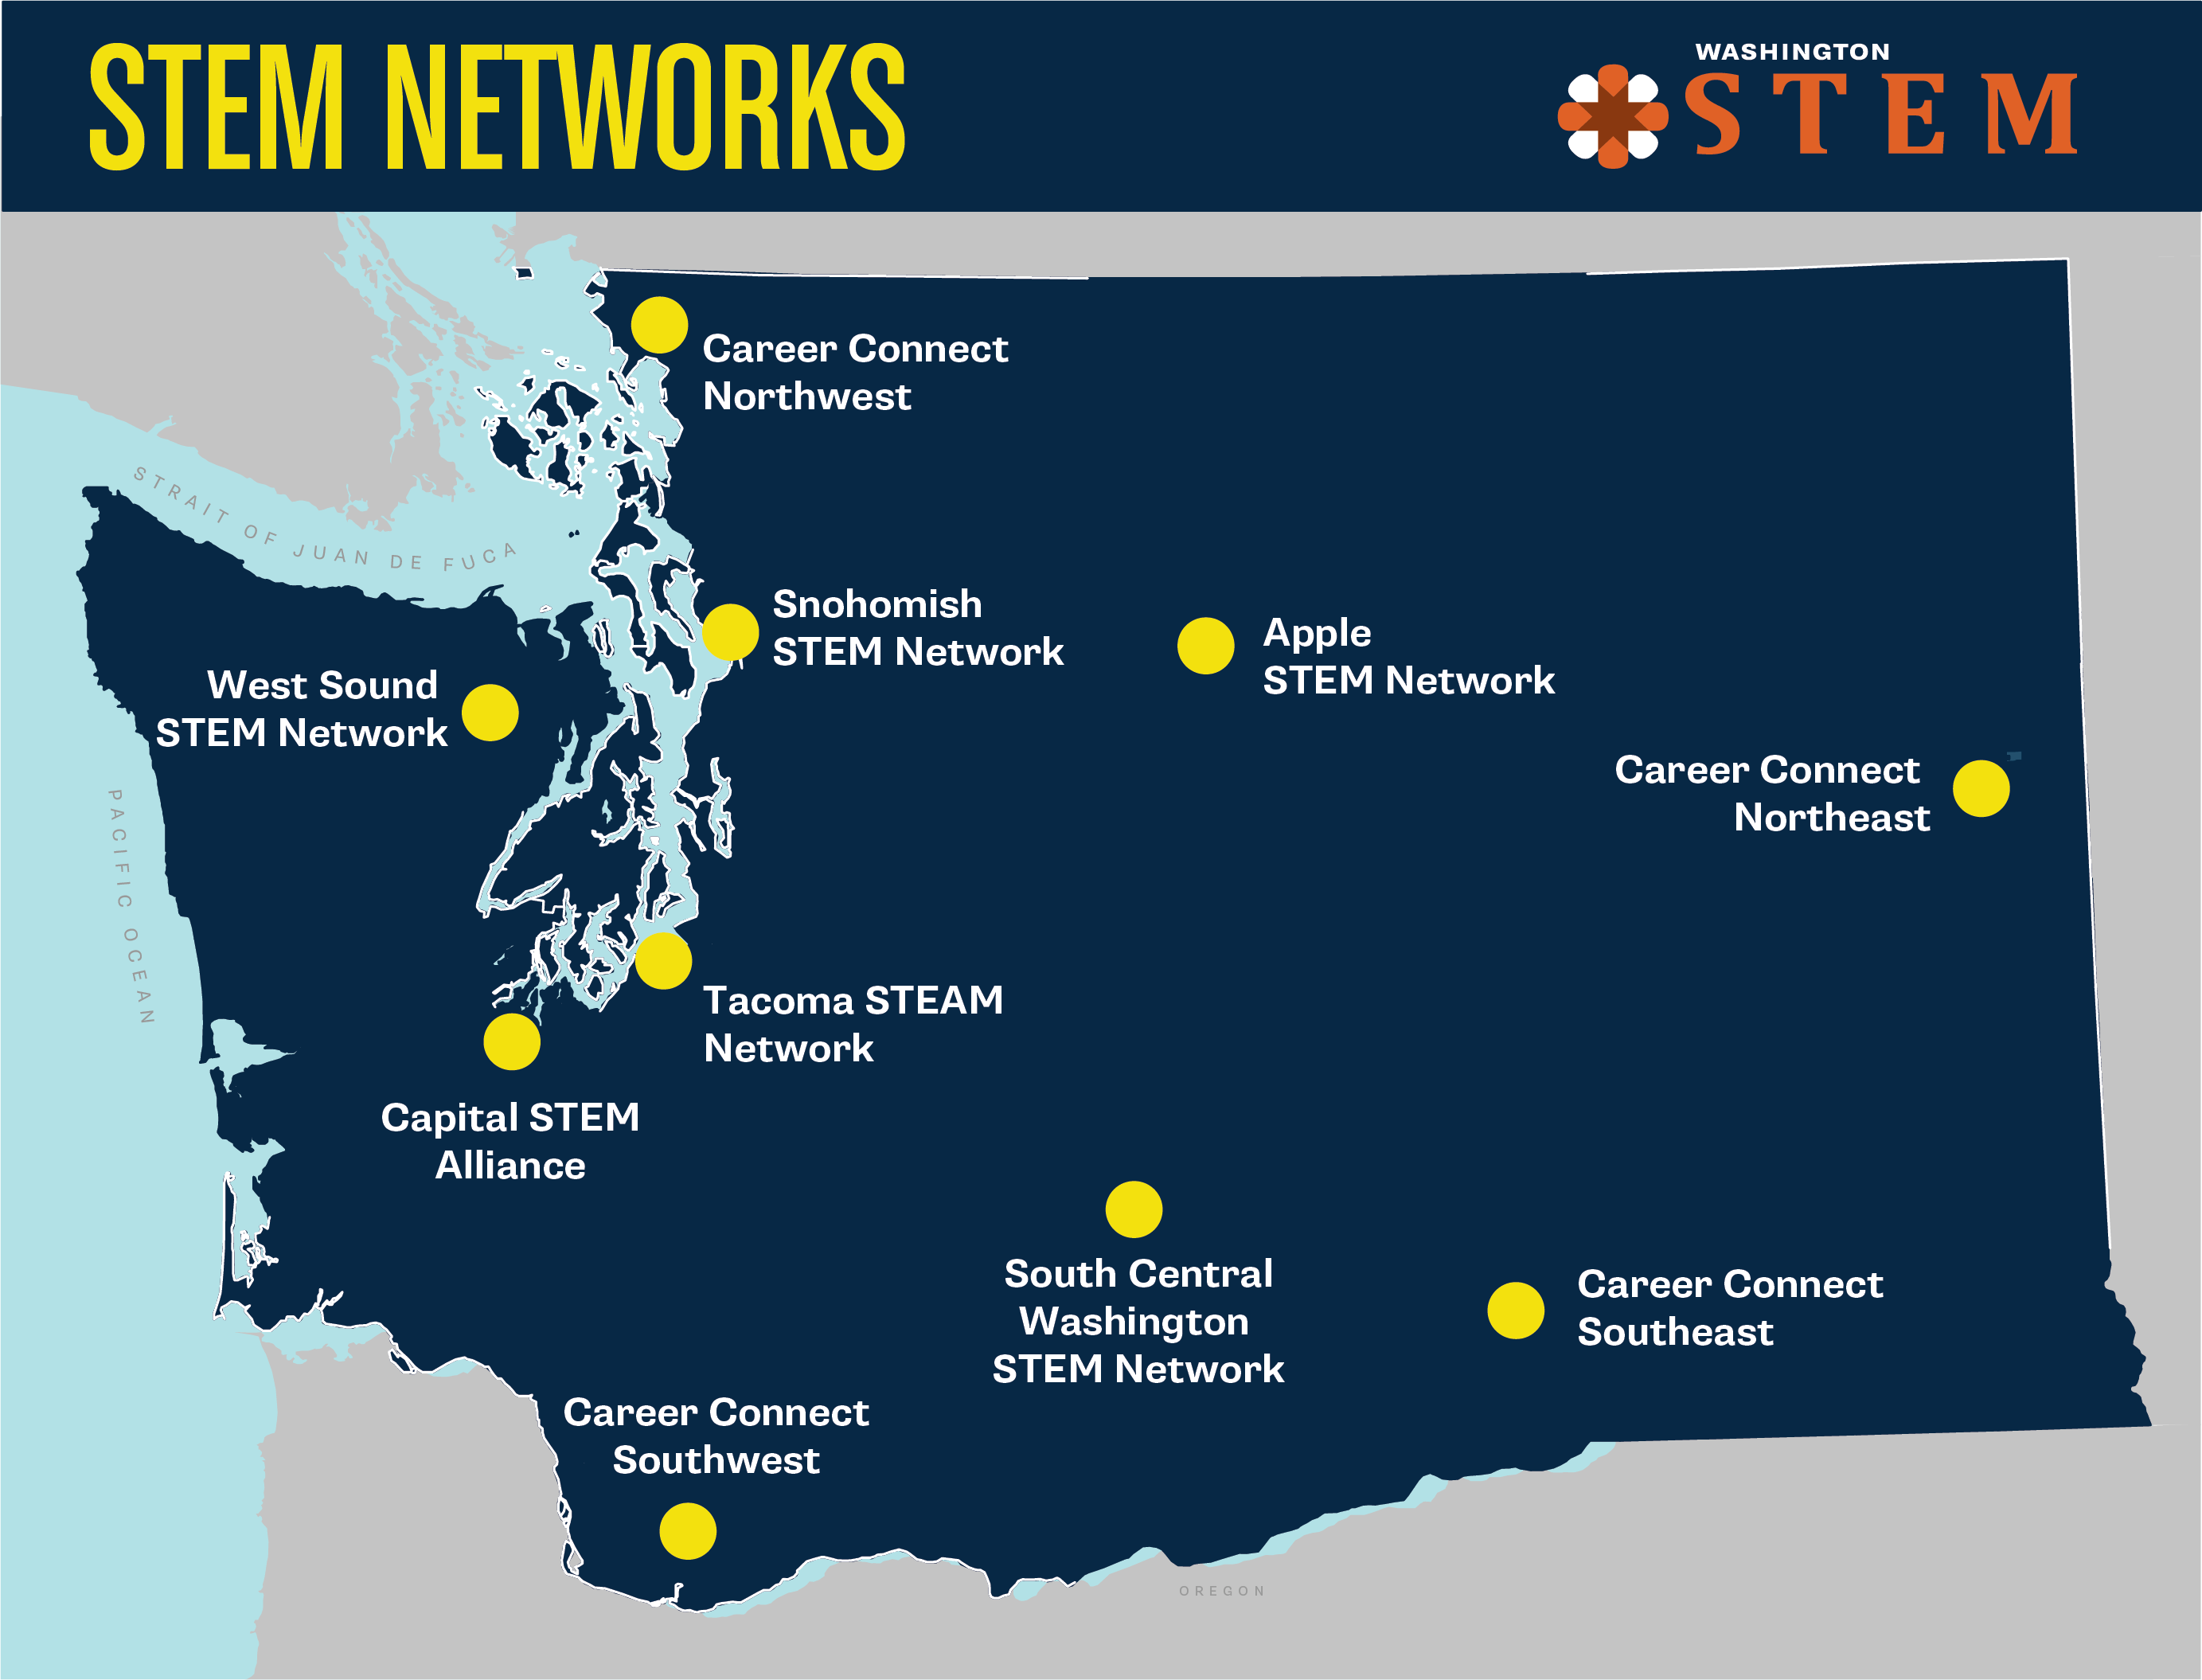 Mapa ng estado ng Washington sa madilim na asul na may mga dilaw na tuldok na nagpapakita ng mga lokasyon ng network